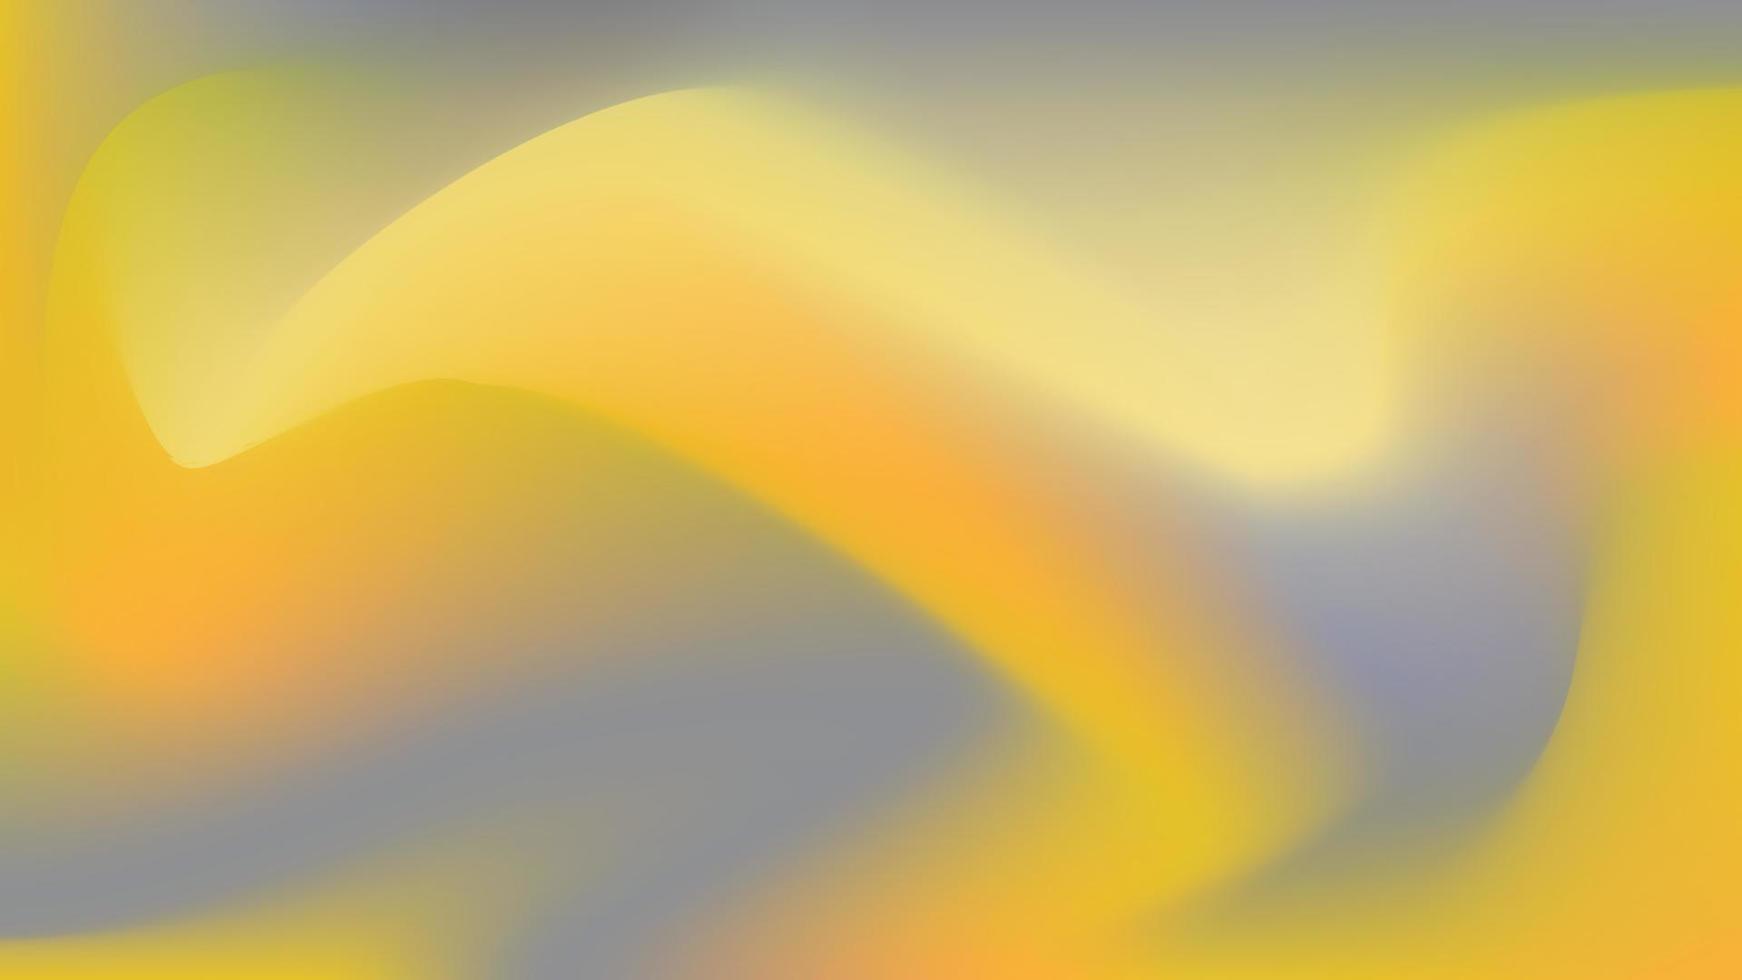 abstrakter gelber und grauer heller Hintergrund mit Farbverlauf vektor